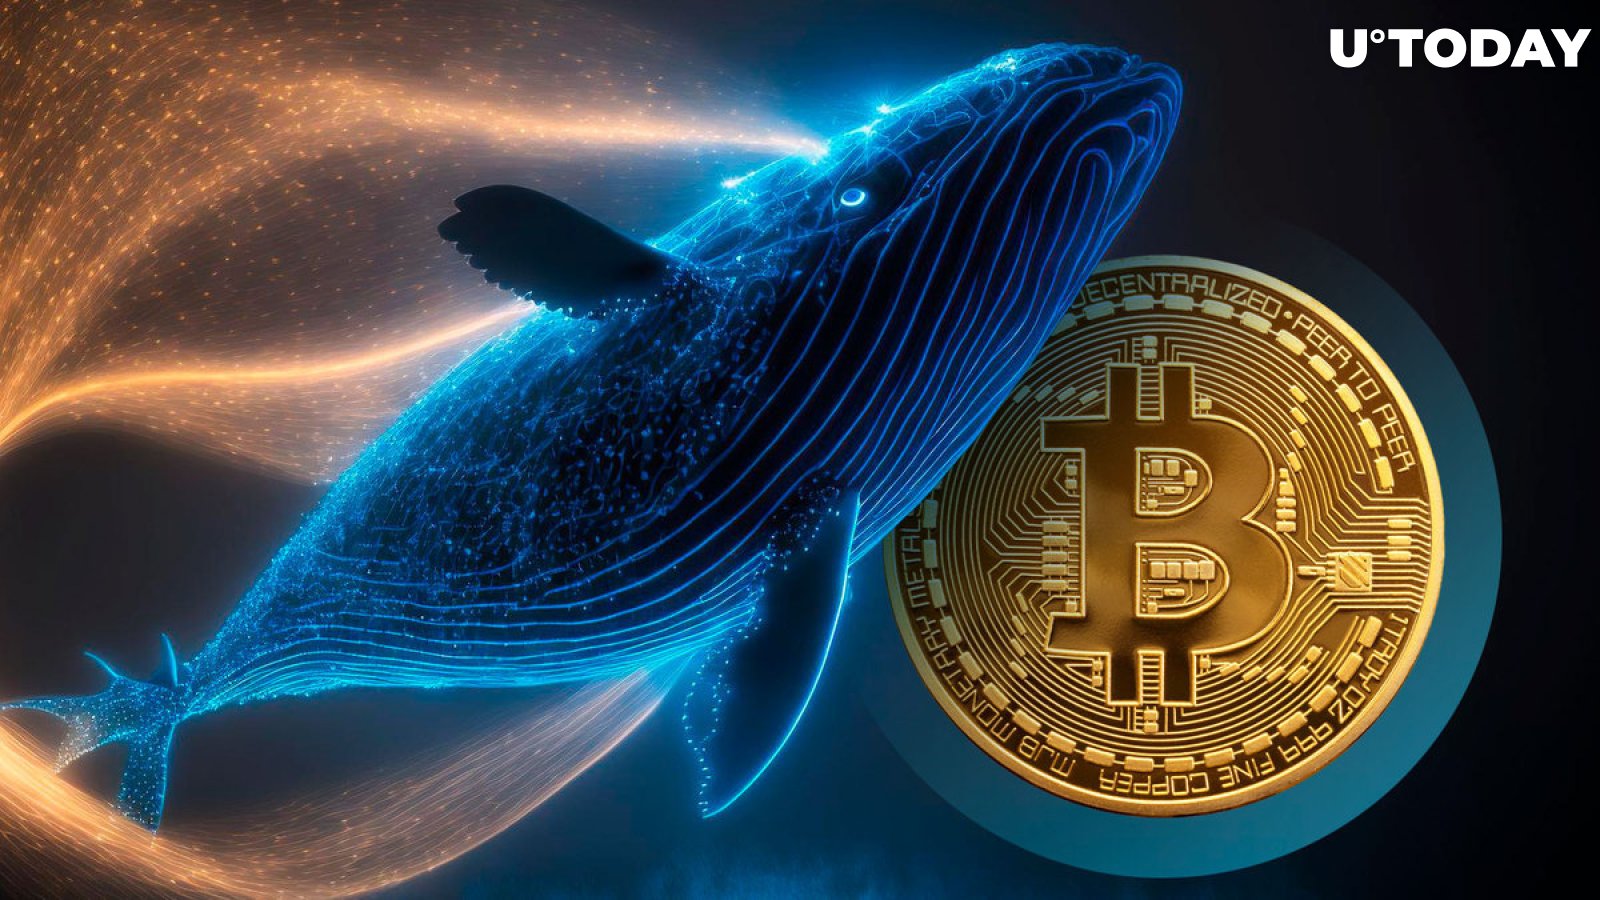 Spree bitcoinů za 5 miliard dolarů od Mega Whales Spotted, co se stalo?